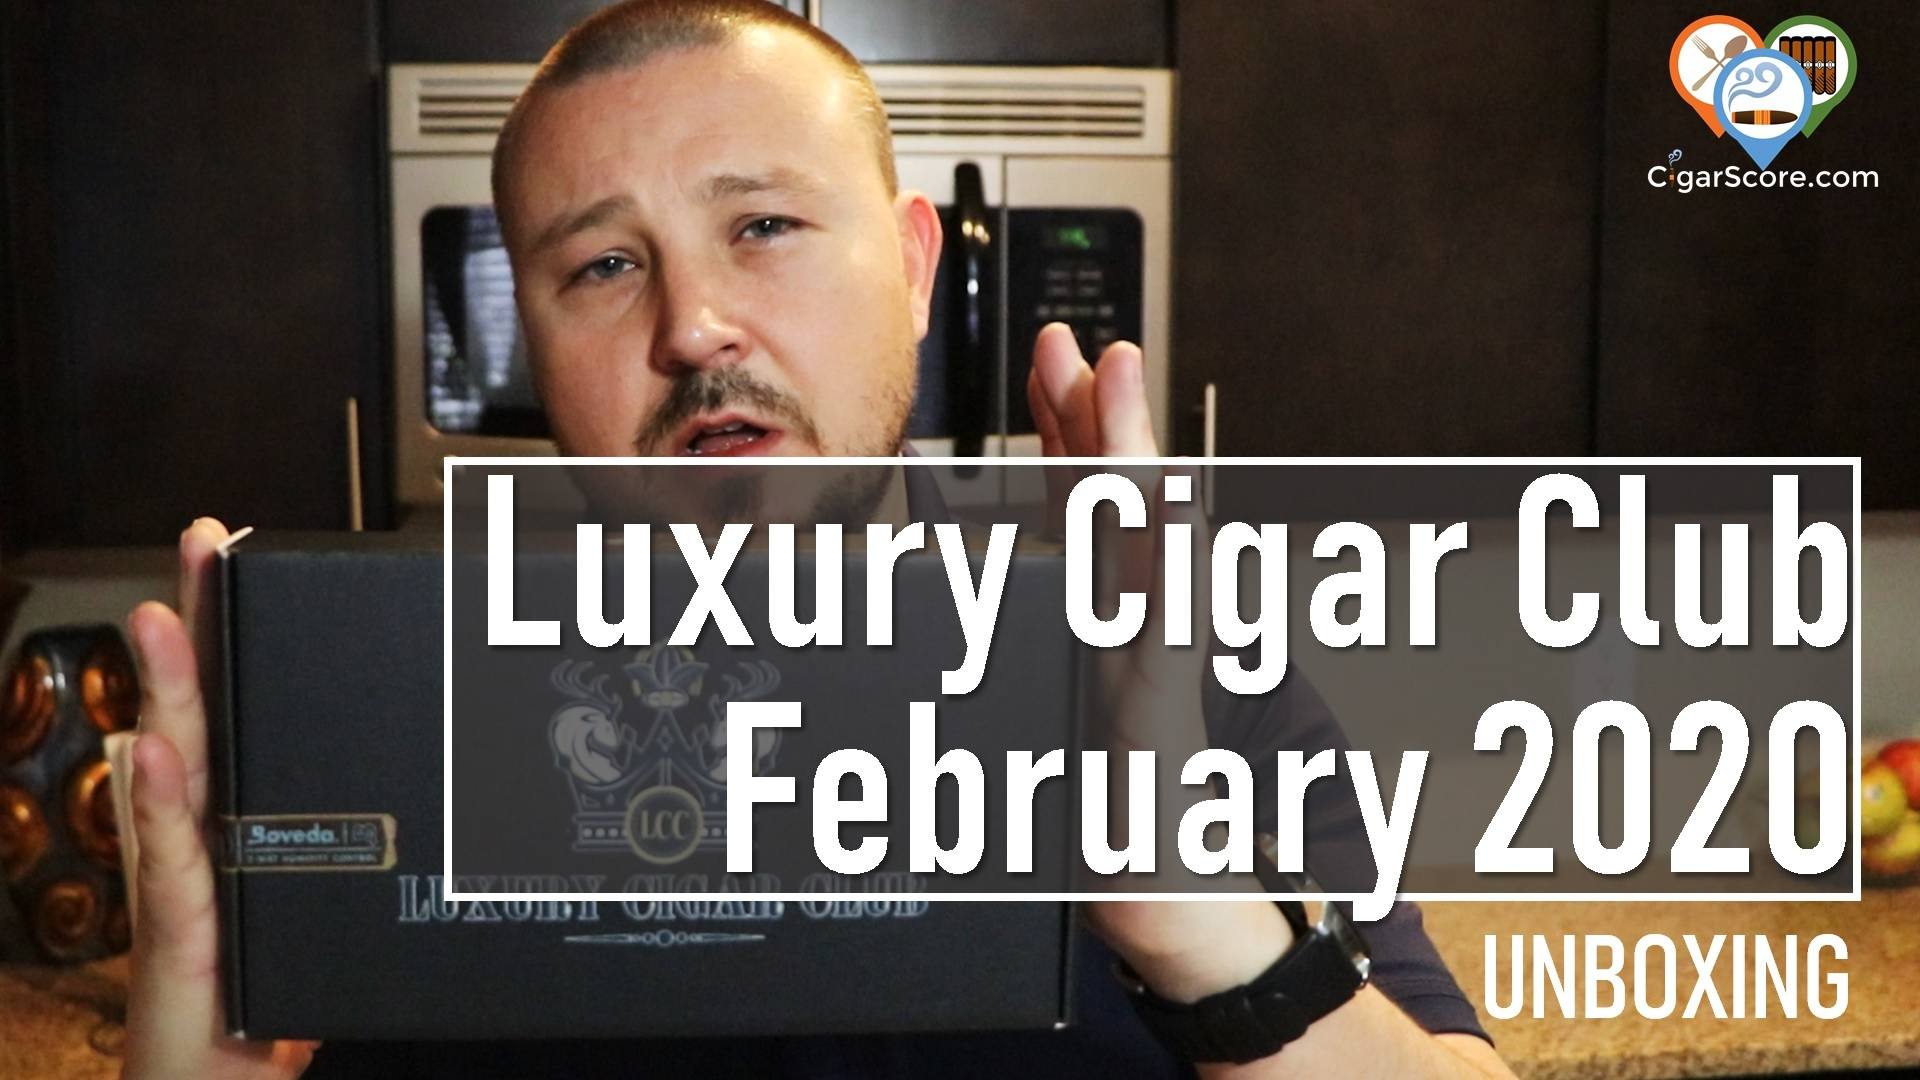 UNBOXING - Luxury Cigar Club February 2020